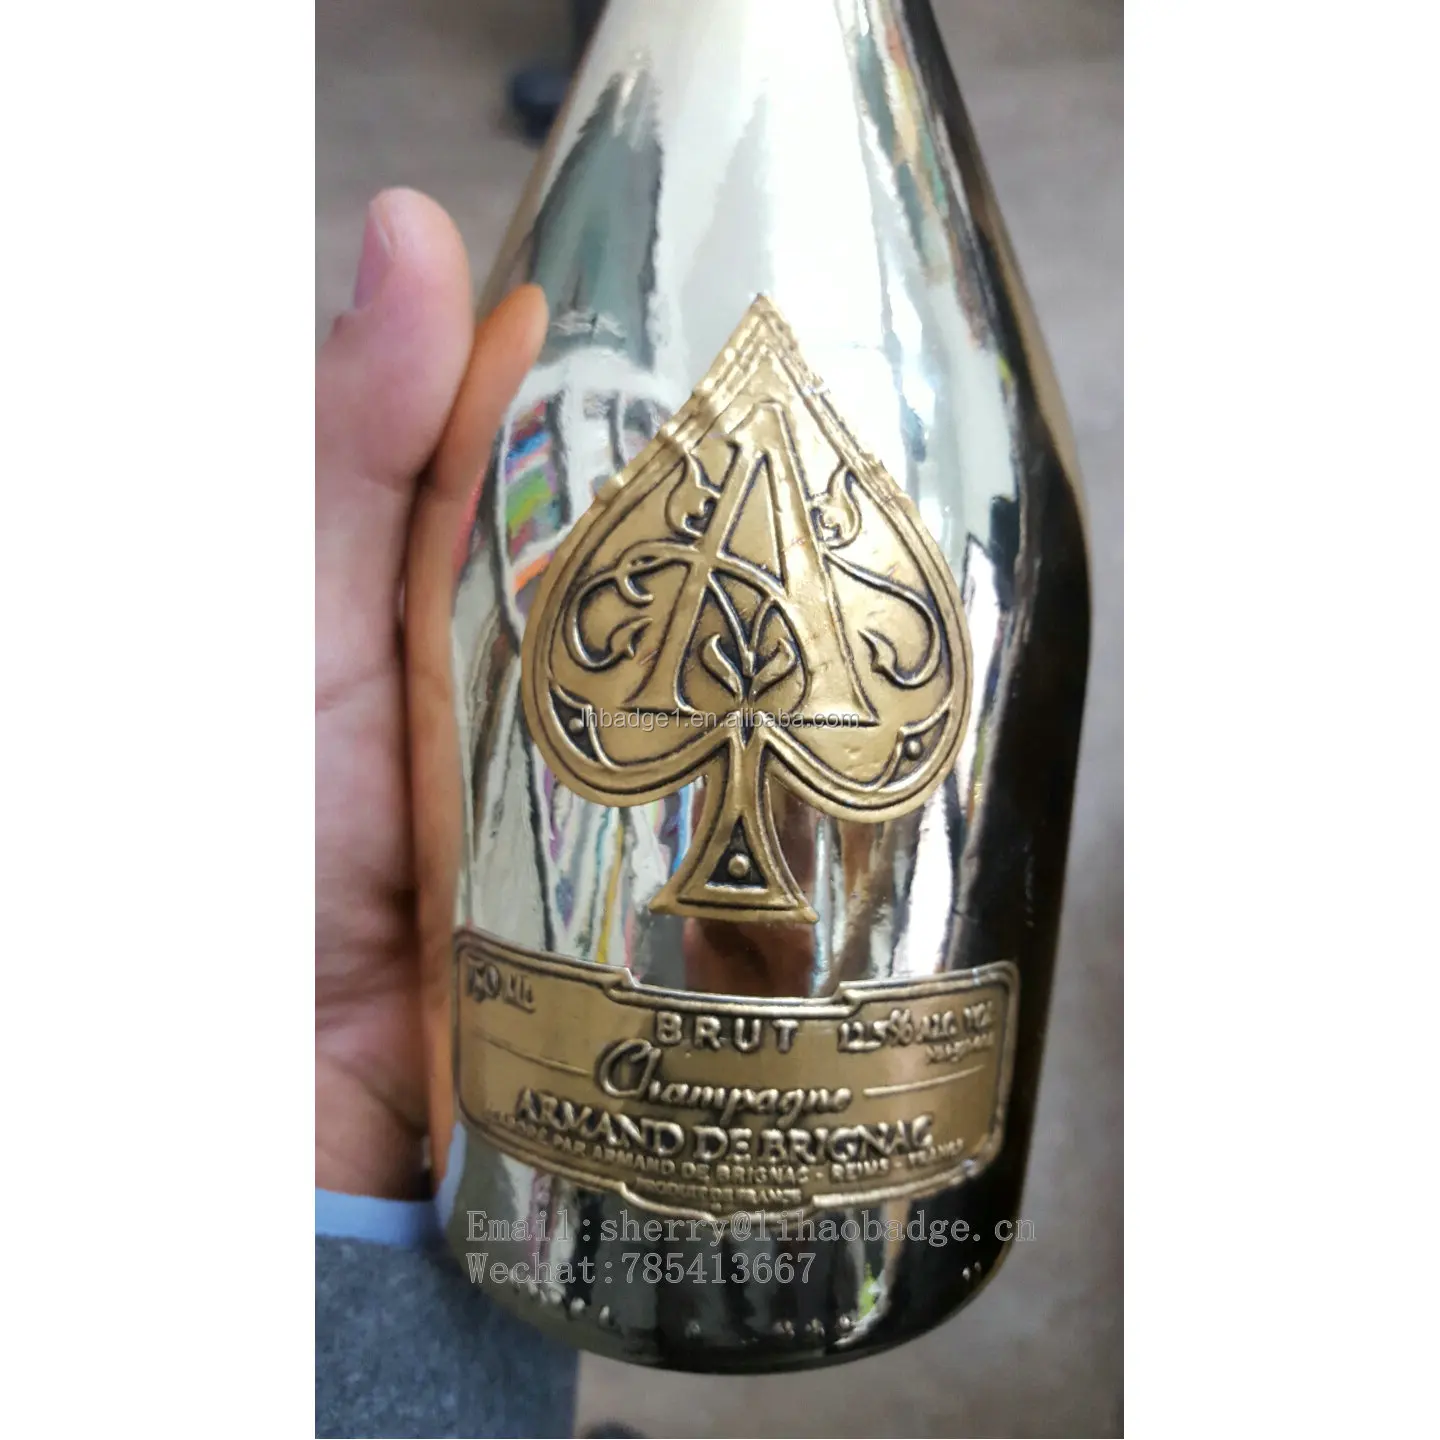 Armand de Brignac Ace of Spades Champagne Bottle - 750ml